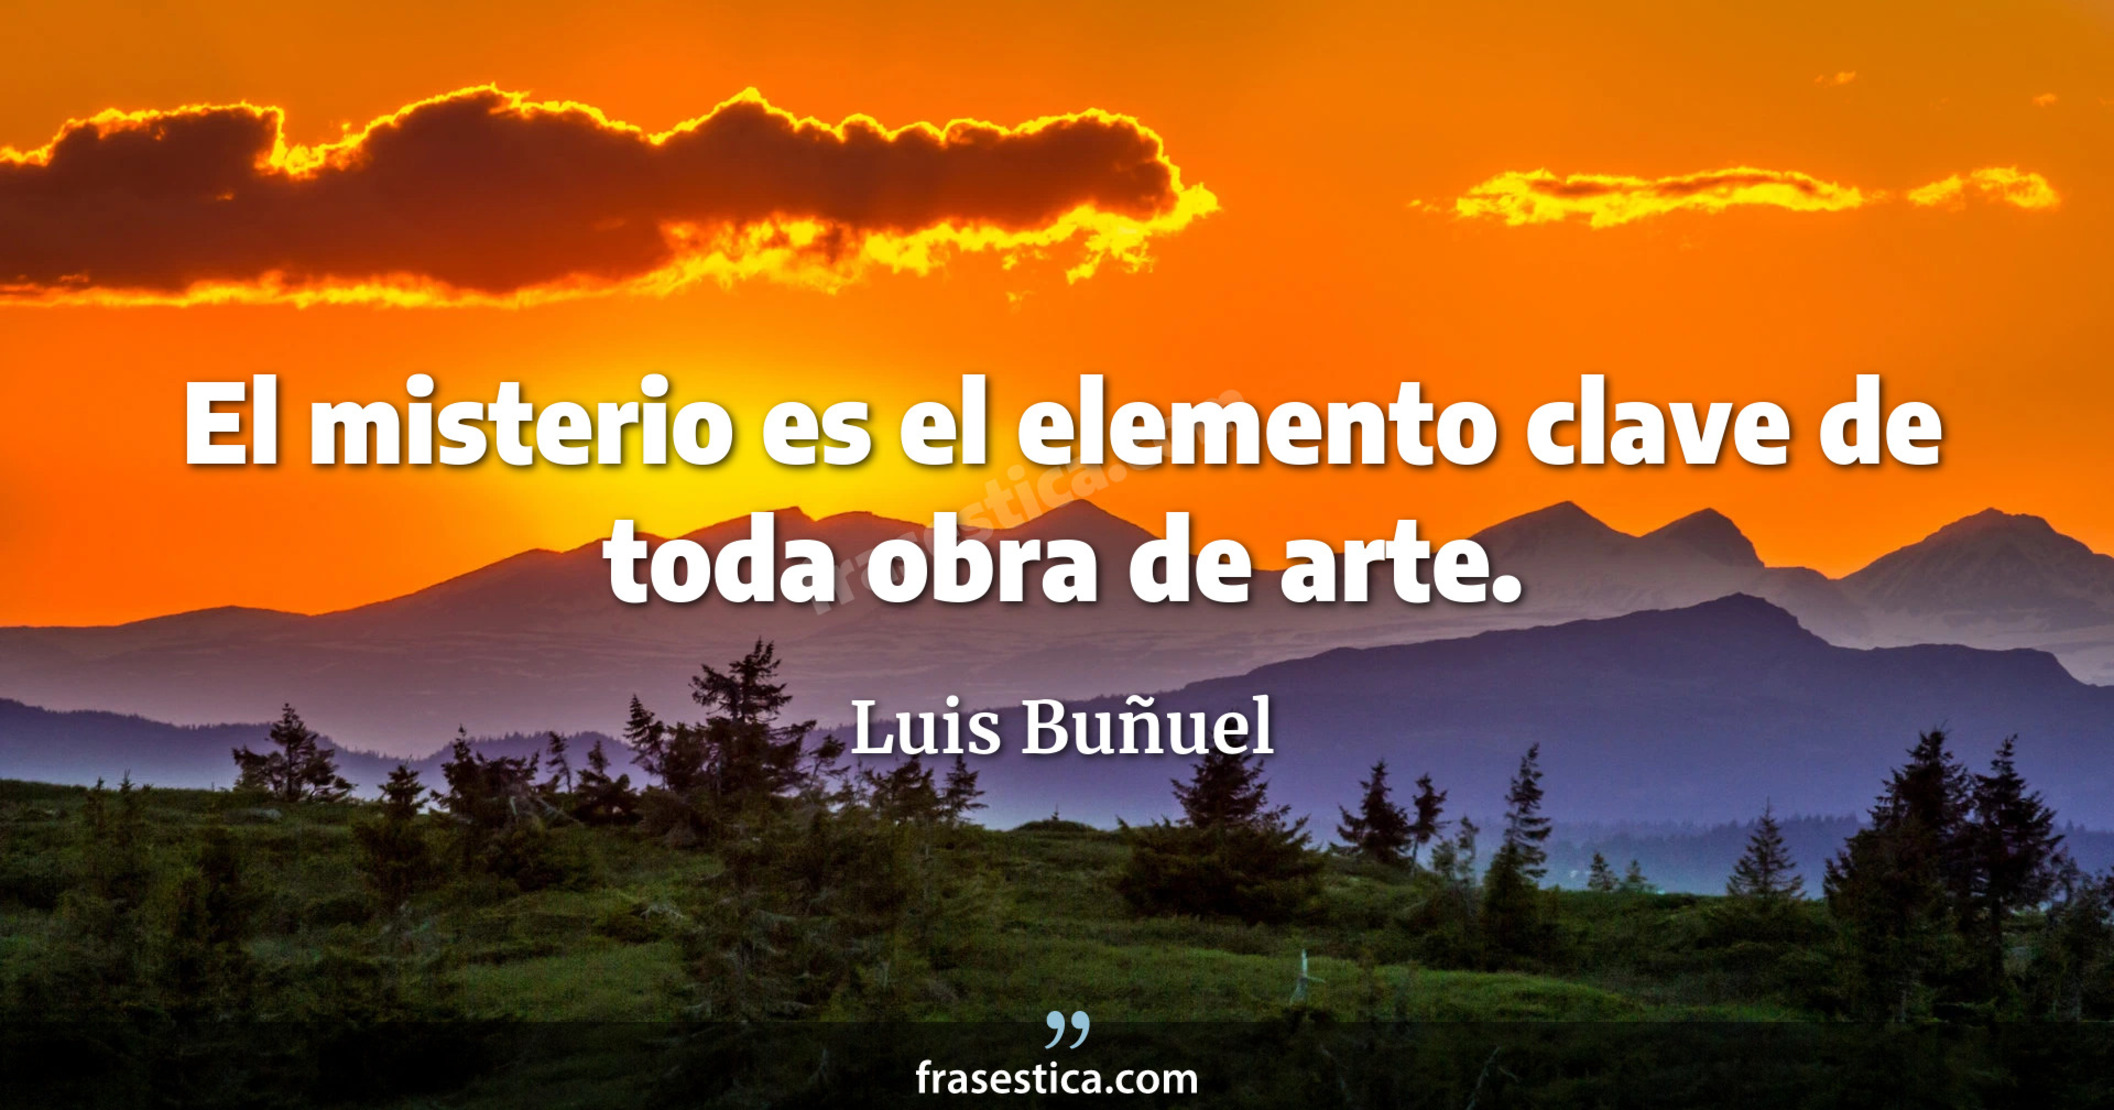 El misterio es el elemento clave de toda obra de arte. - Luis Buñuel